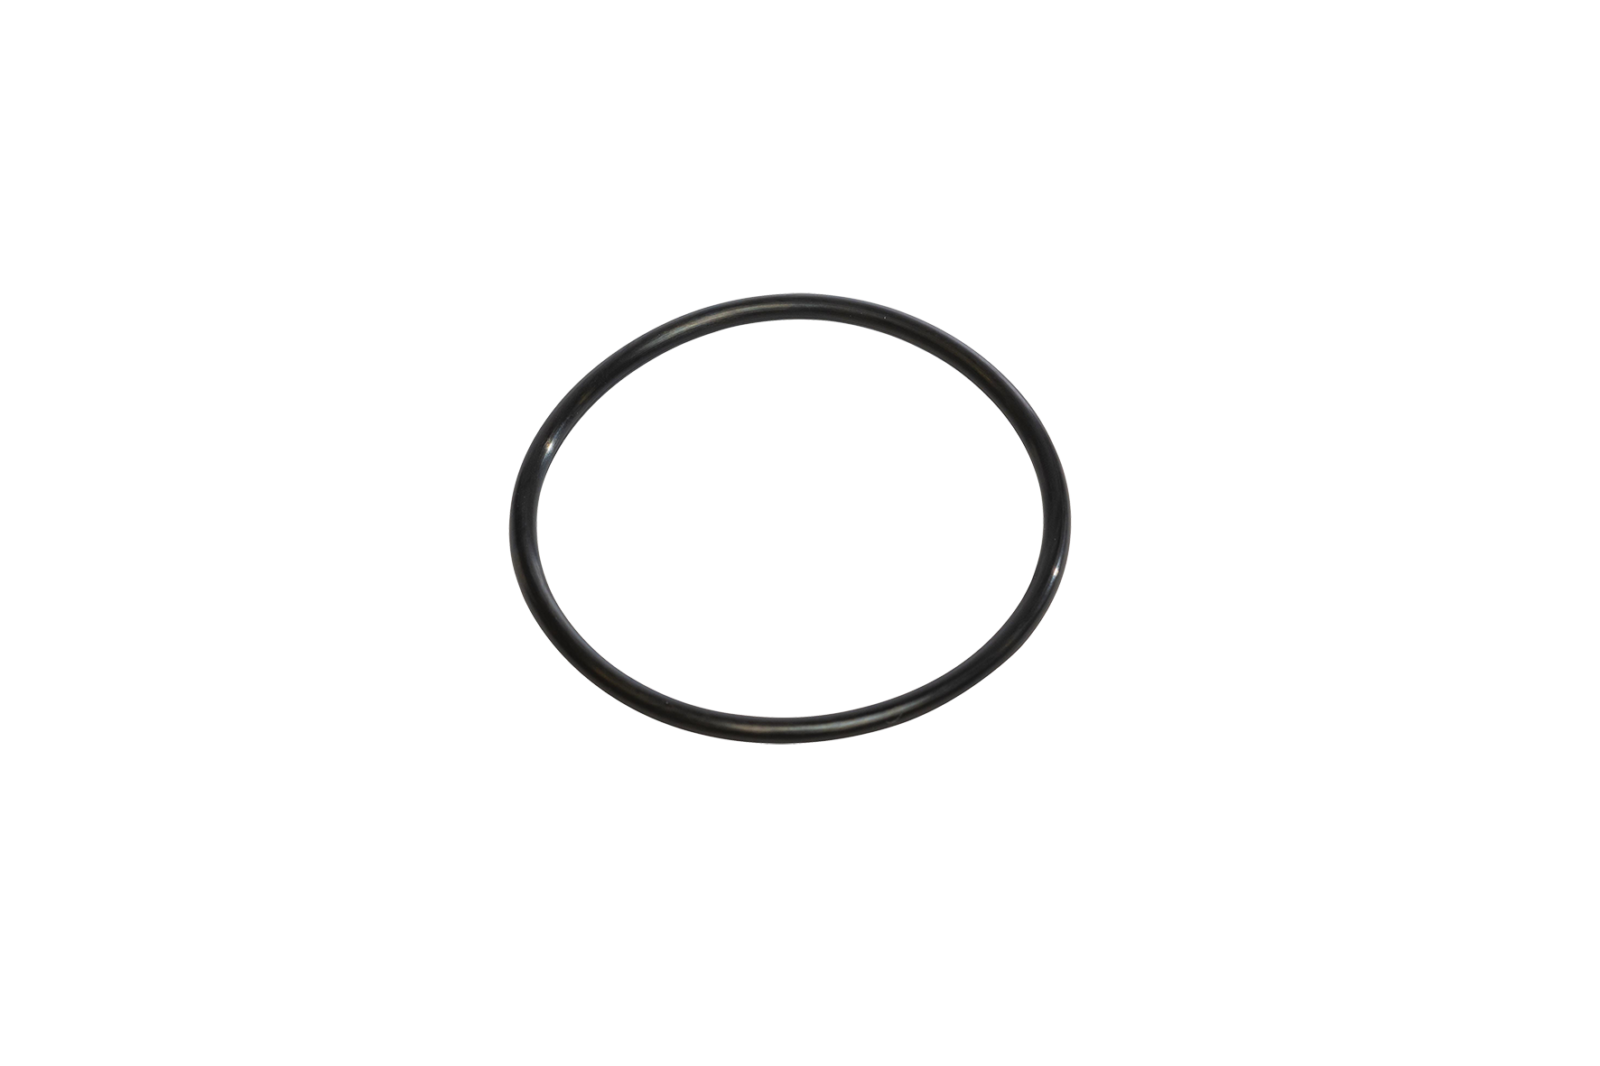 Cintropur Bowl 'O' Ring NW18/25/32, SL160/SL240 & UV2100